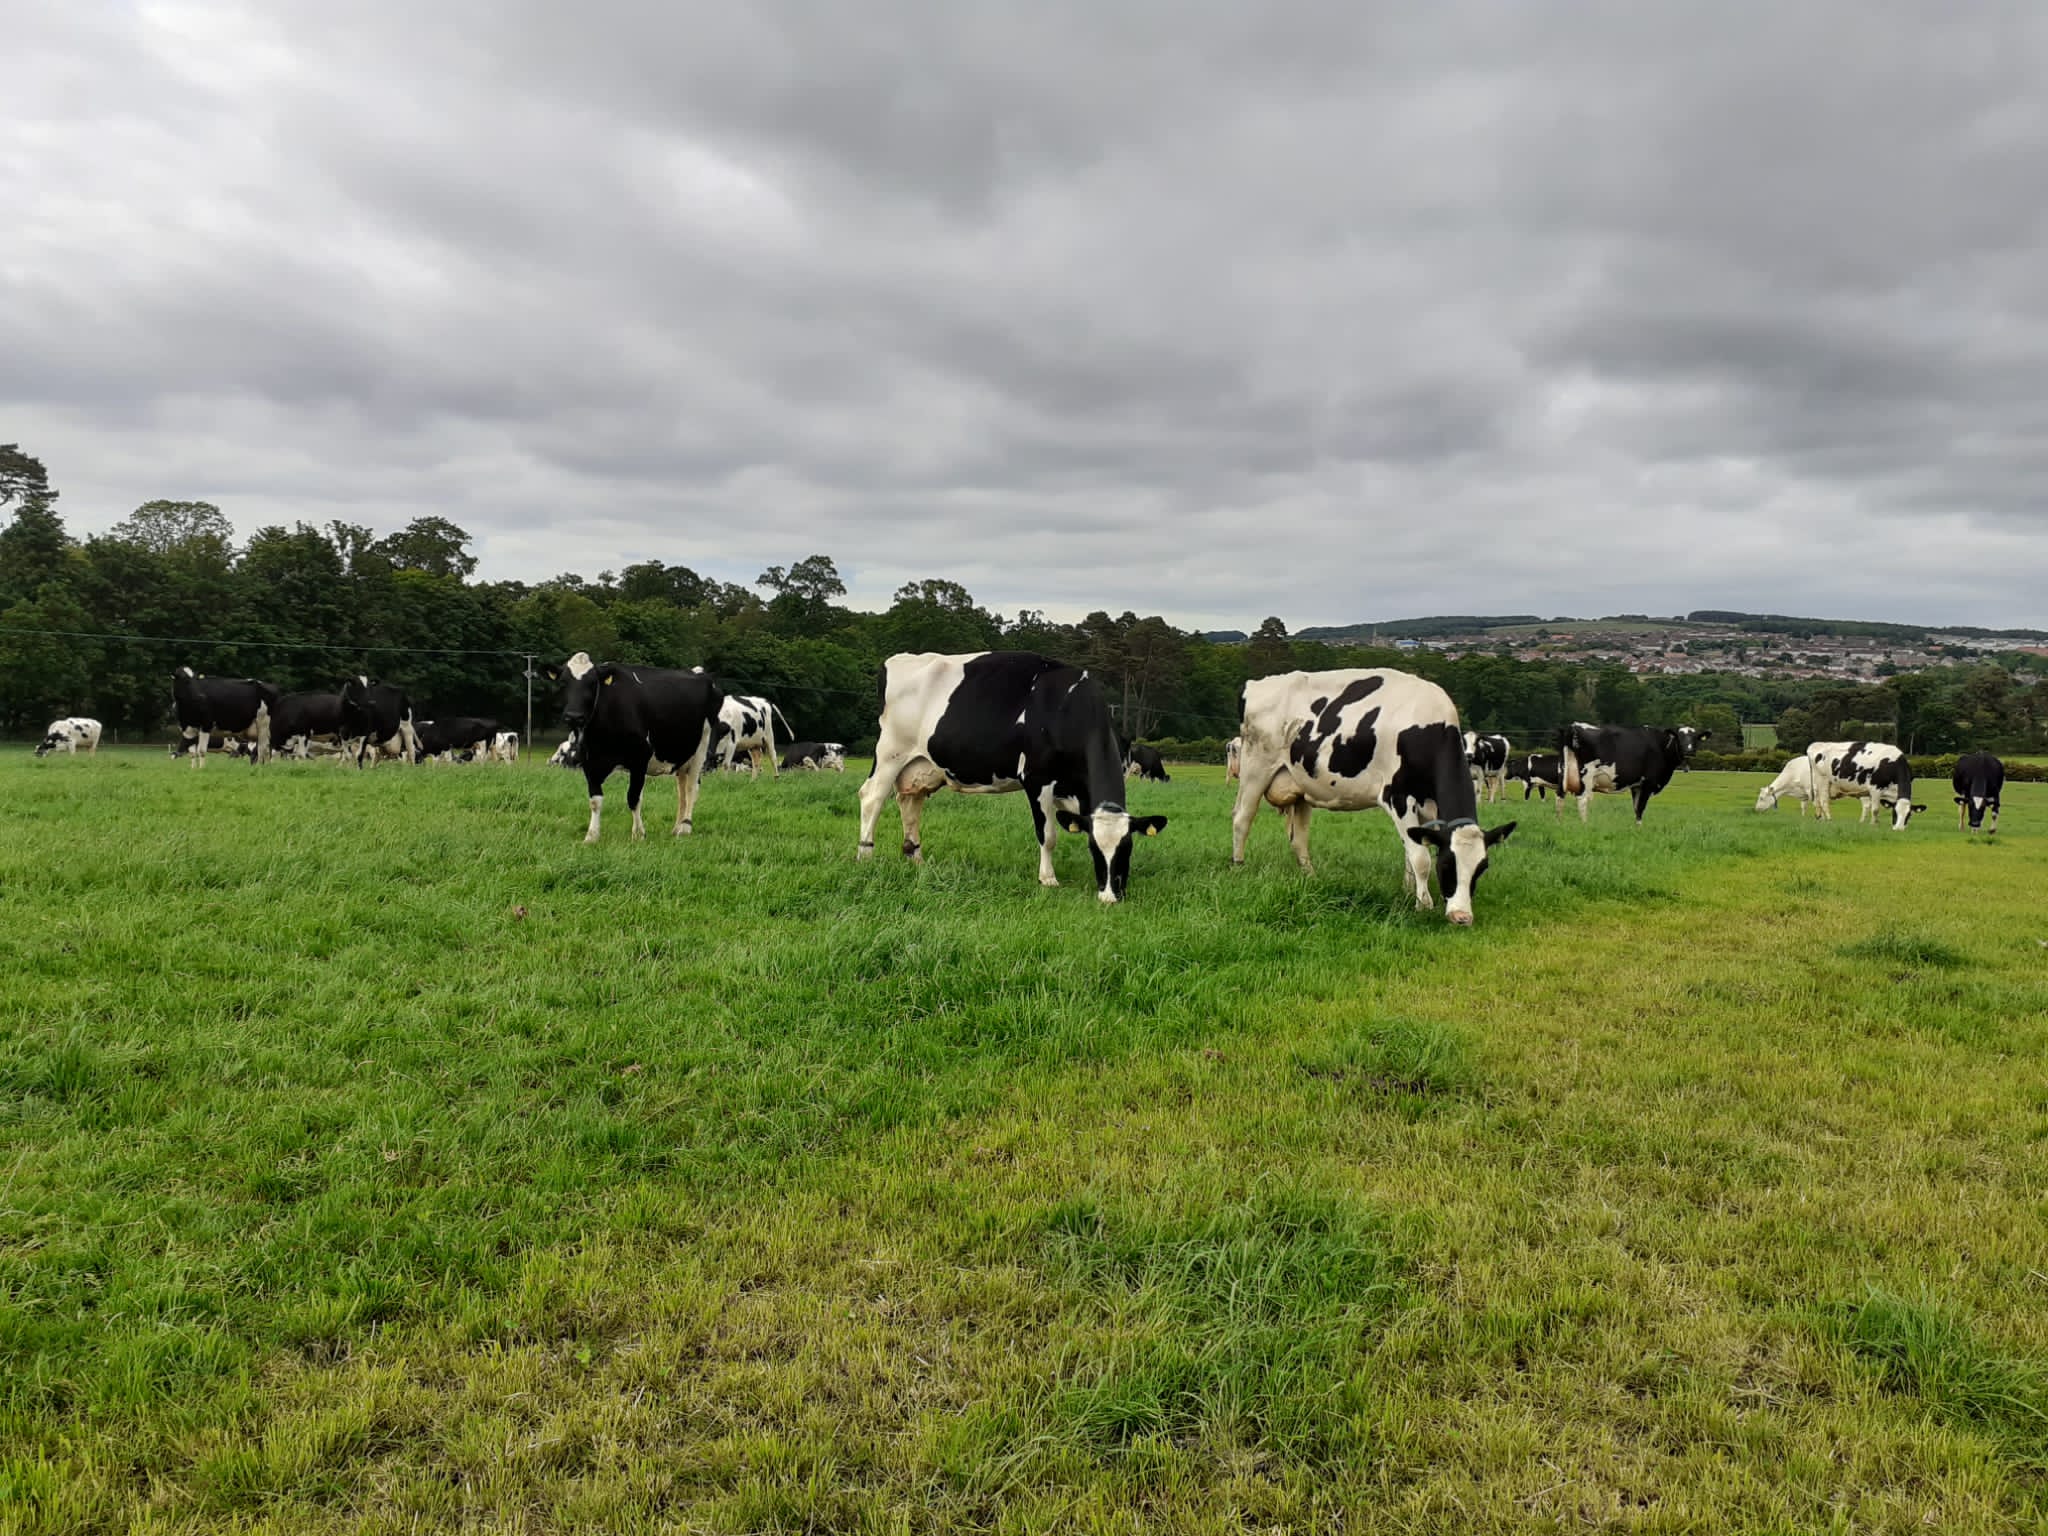 Castleton Farm cows in field